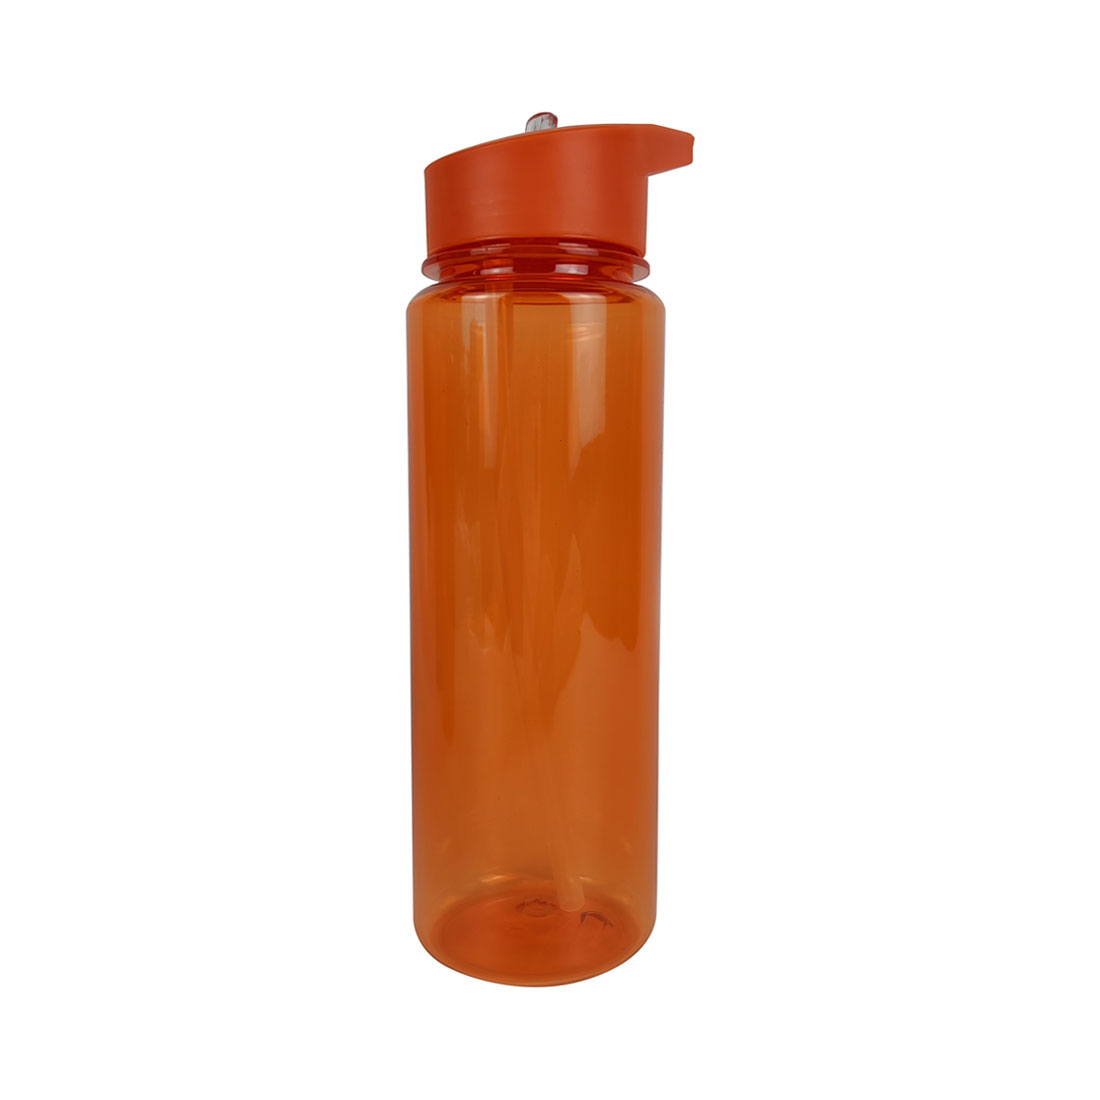 Пластиковая бутылка  Мельбурн - Оранжевый OO, Оранжевый OO